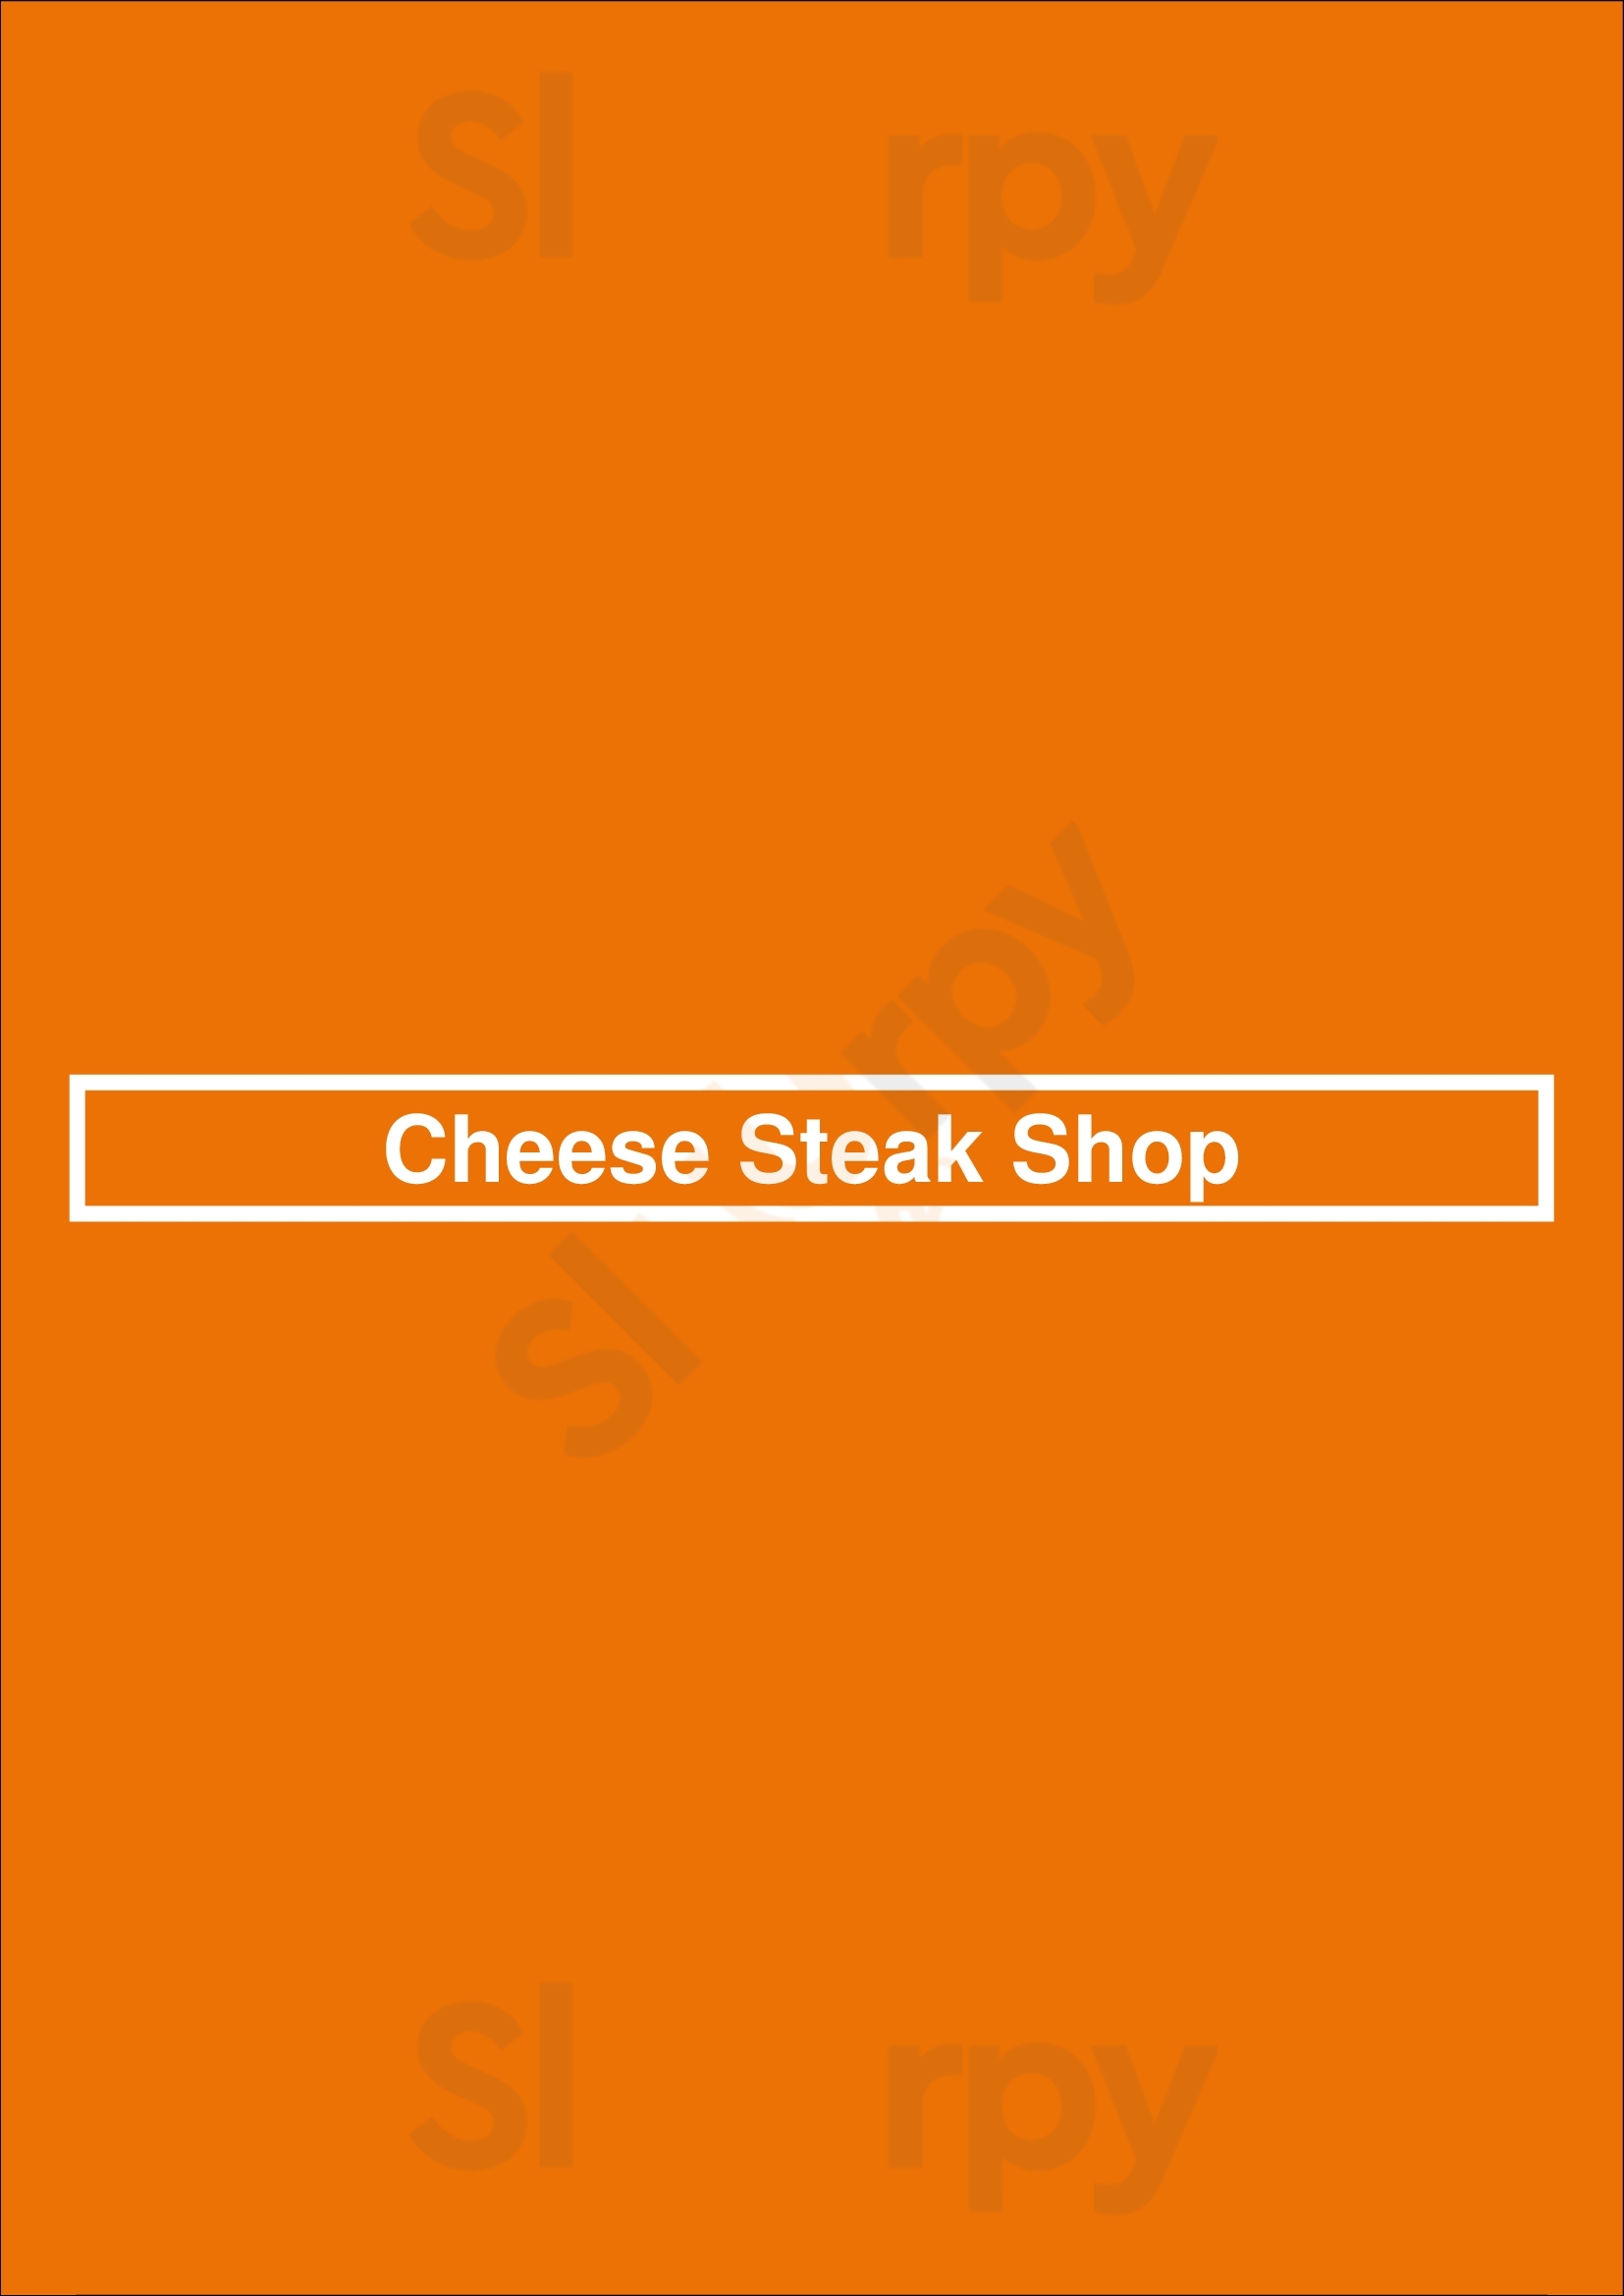 Cheese Steak Shop San Jose Menu - 1